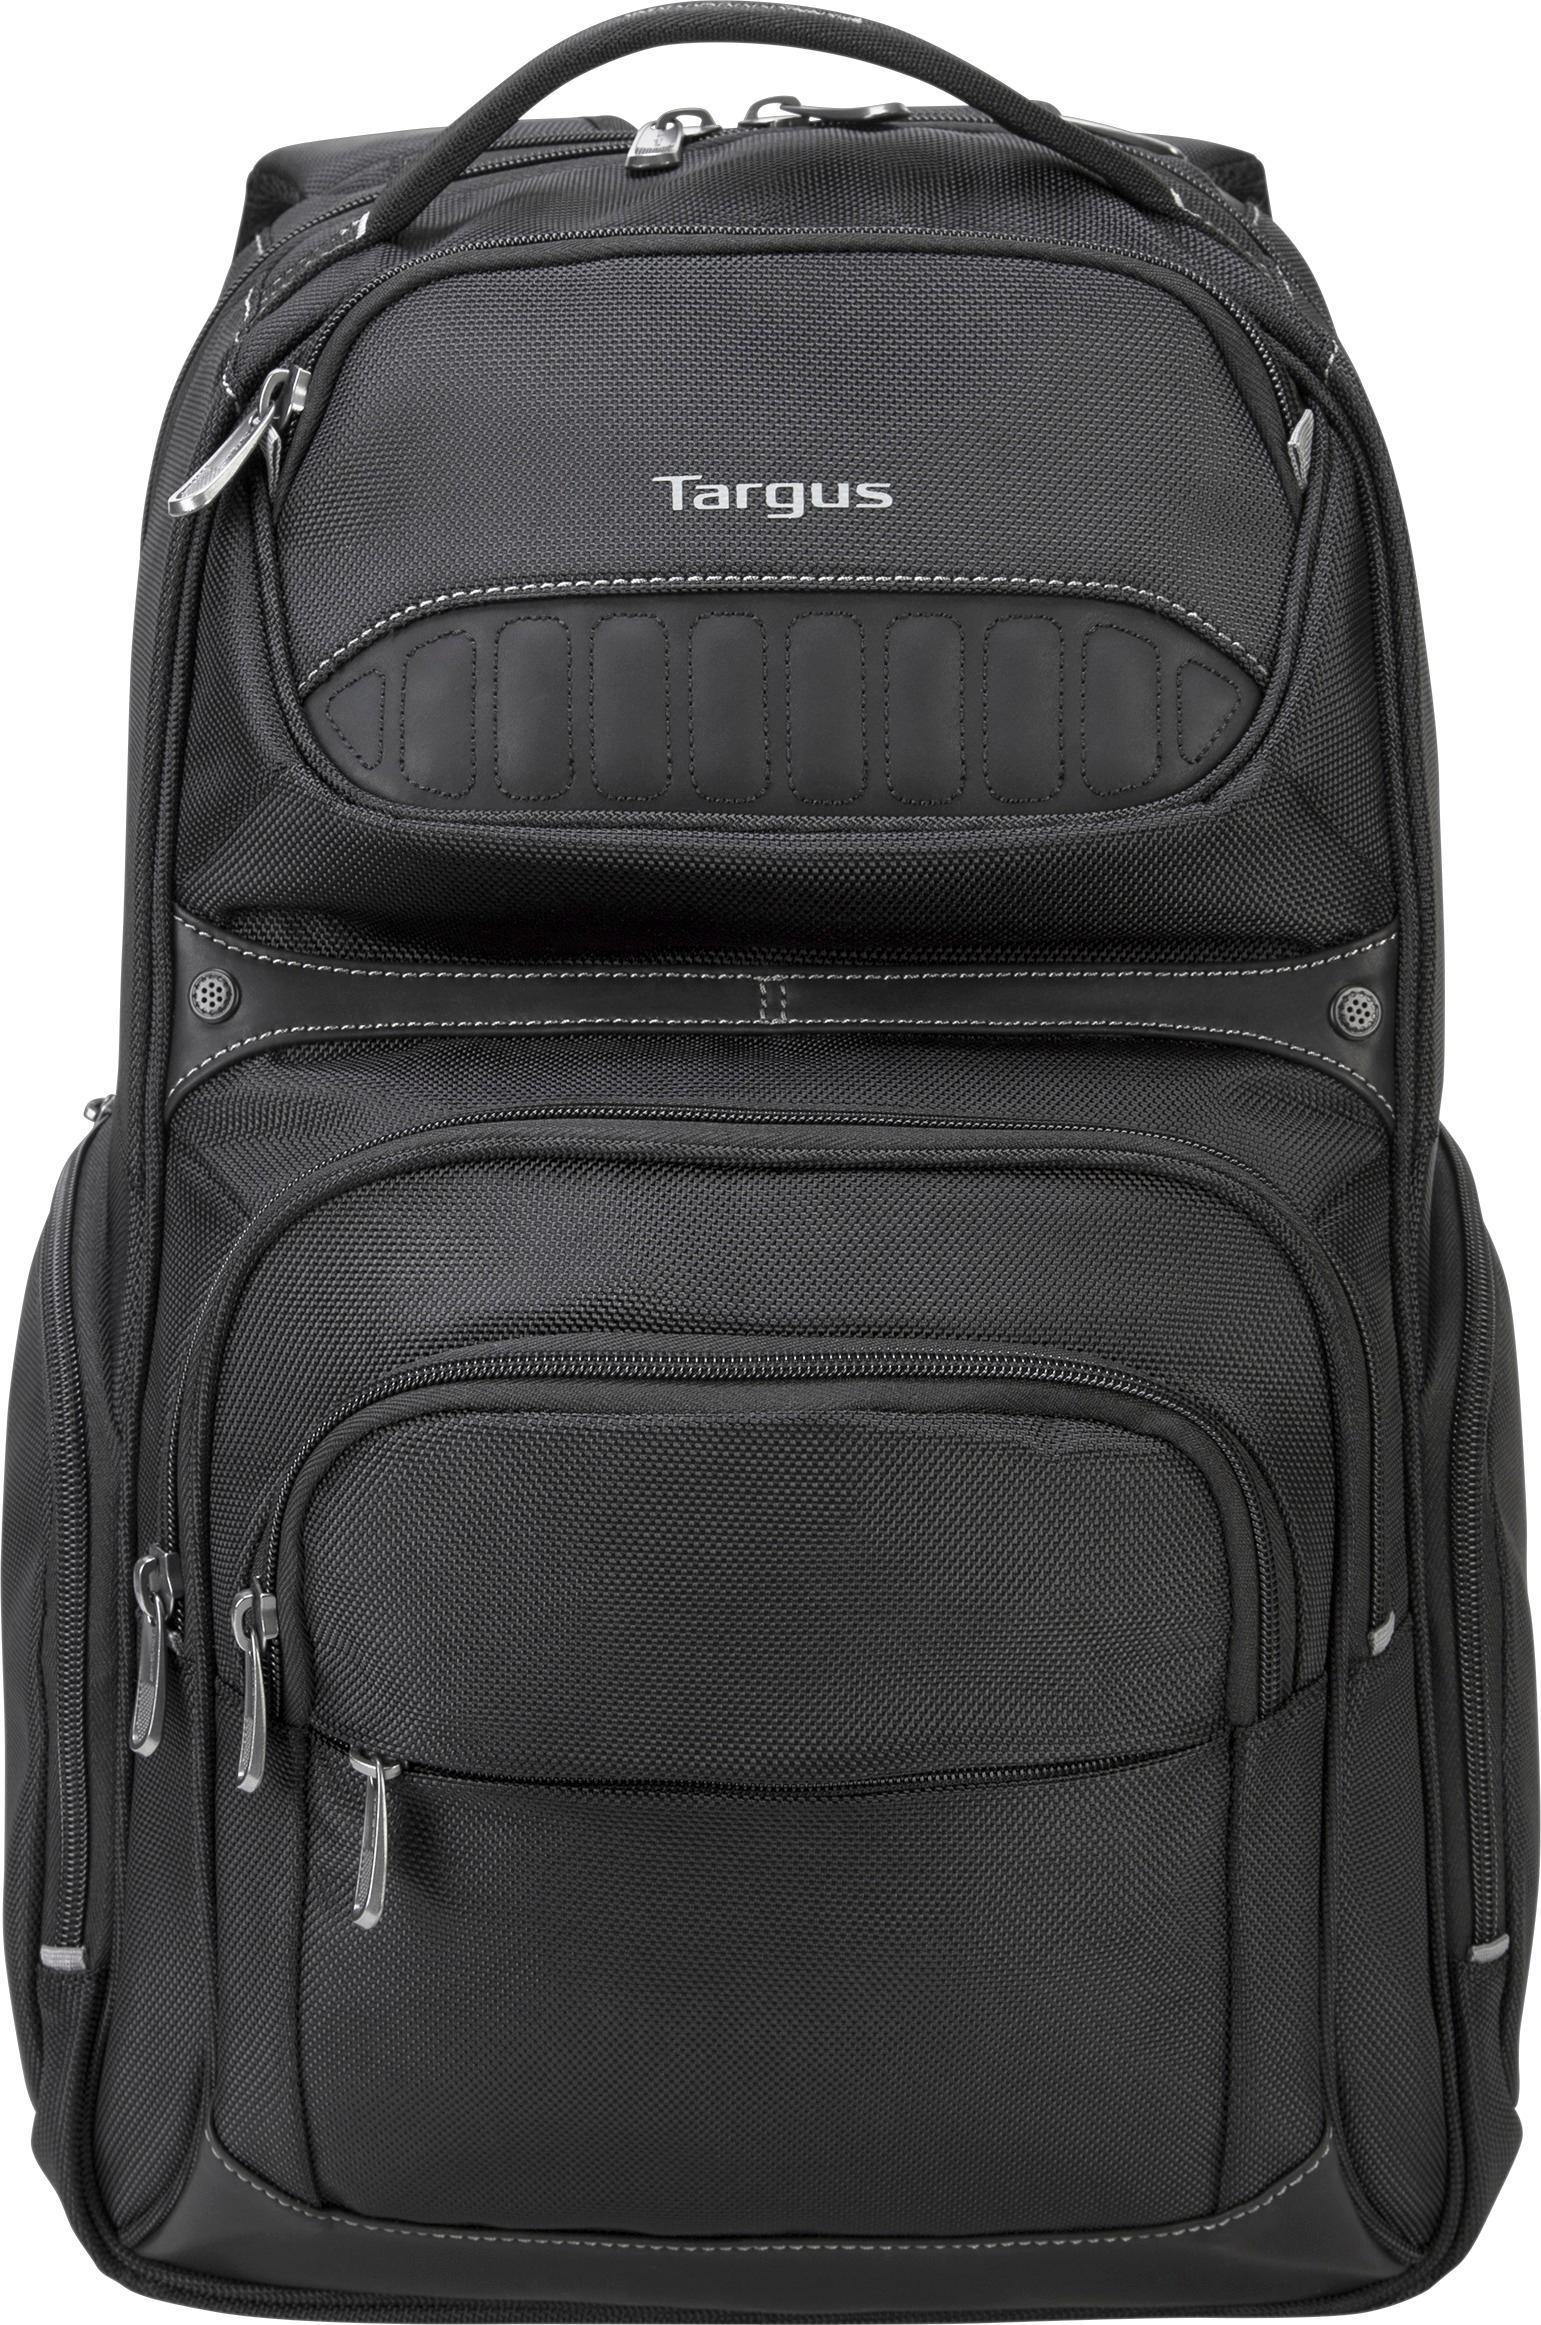 Customer Reviews: Targus Legend Laptop Backpack Black PBS705US - Best Buy